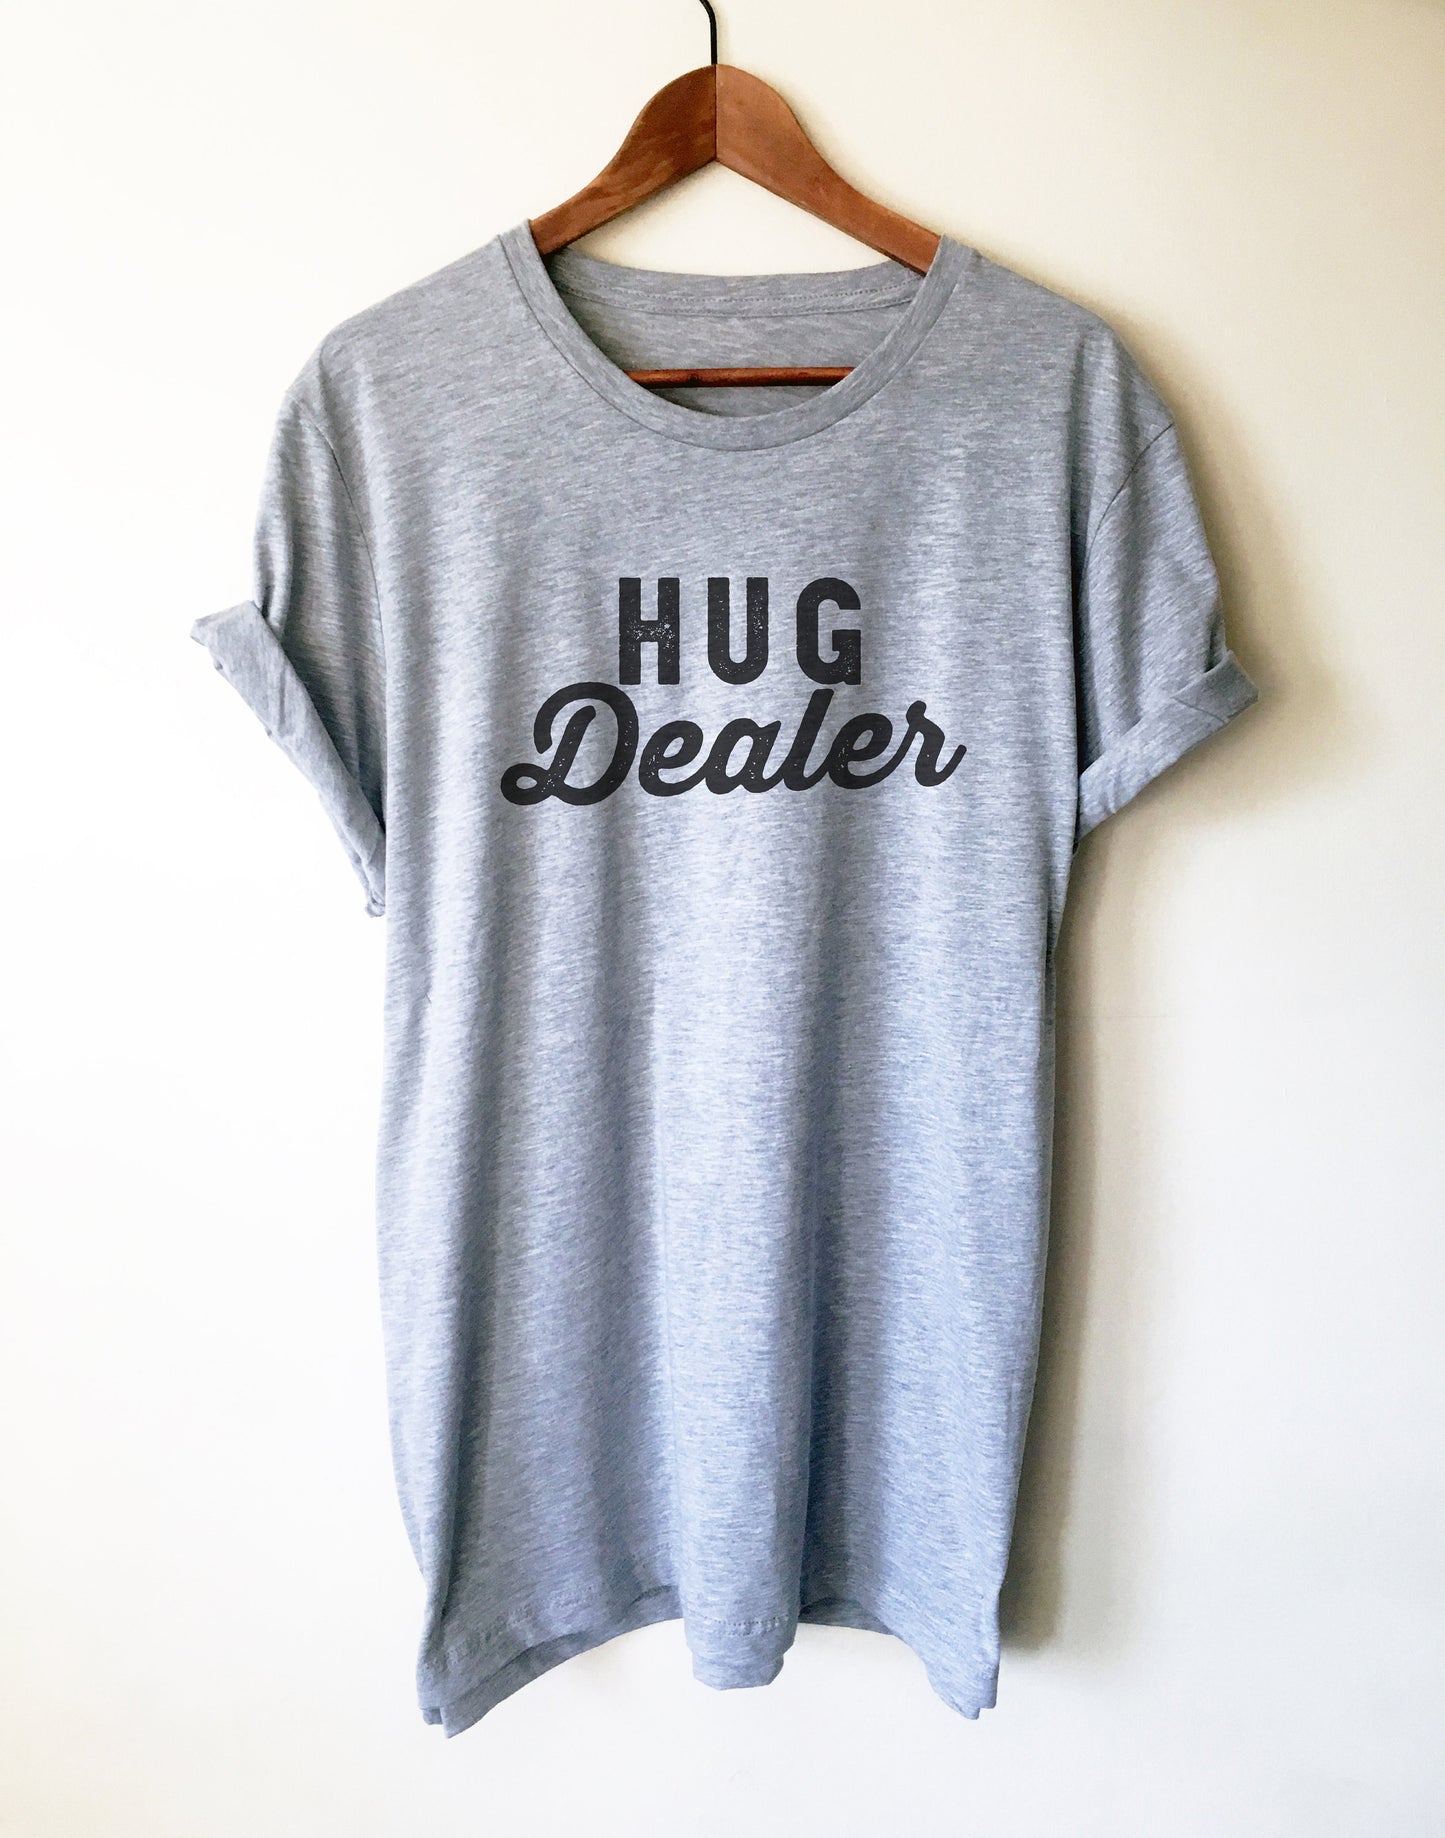 Hug Dealer Unisex Shirt-Hug Shirt, Counselor Shirt, School Counselor, Grandma Shirt, Mom Shirt, Therapist Shirt, School Nurse, Hippie Shirt